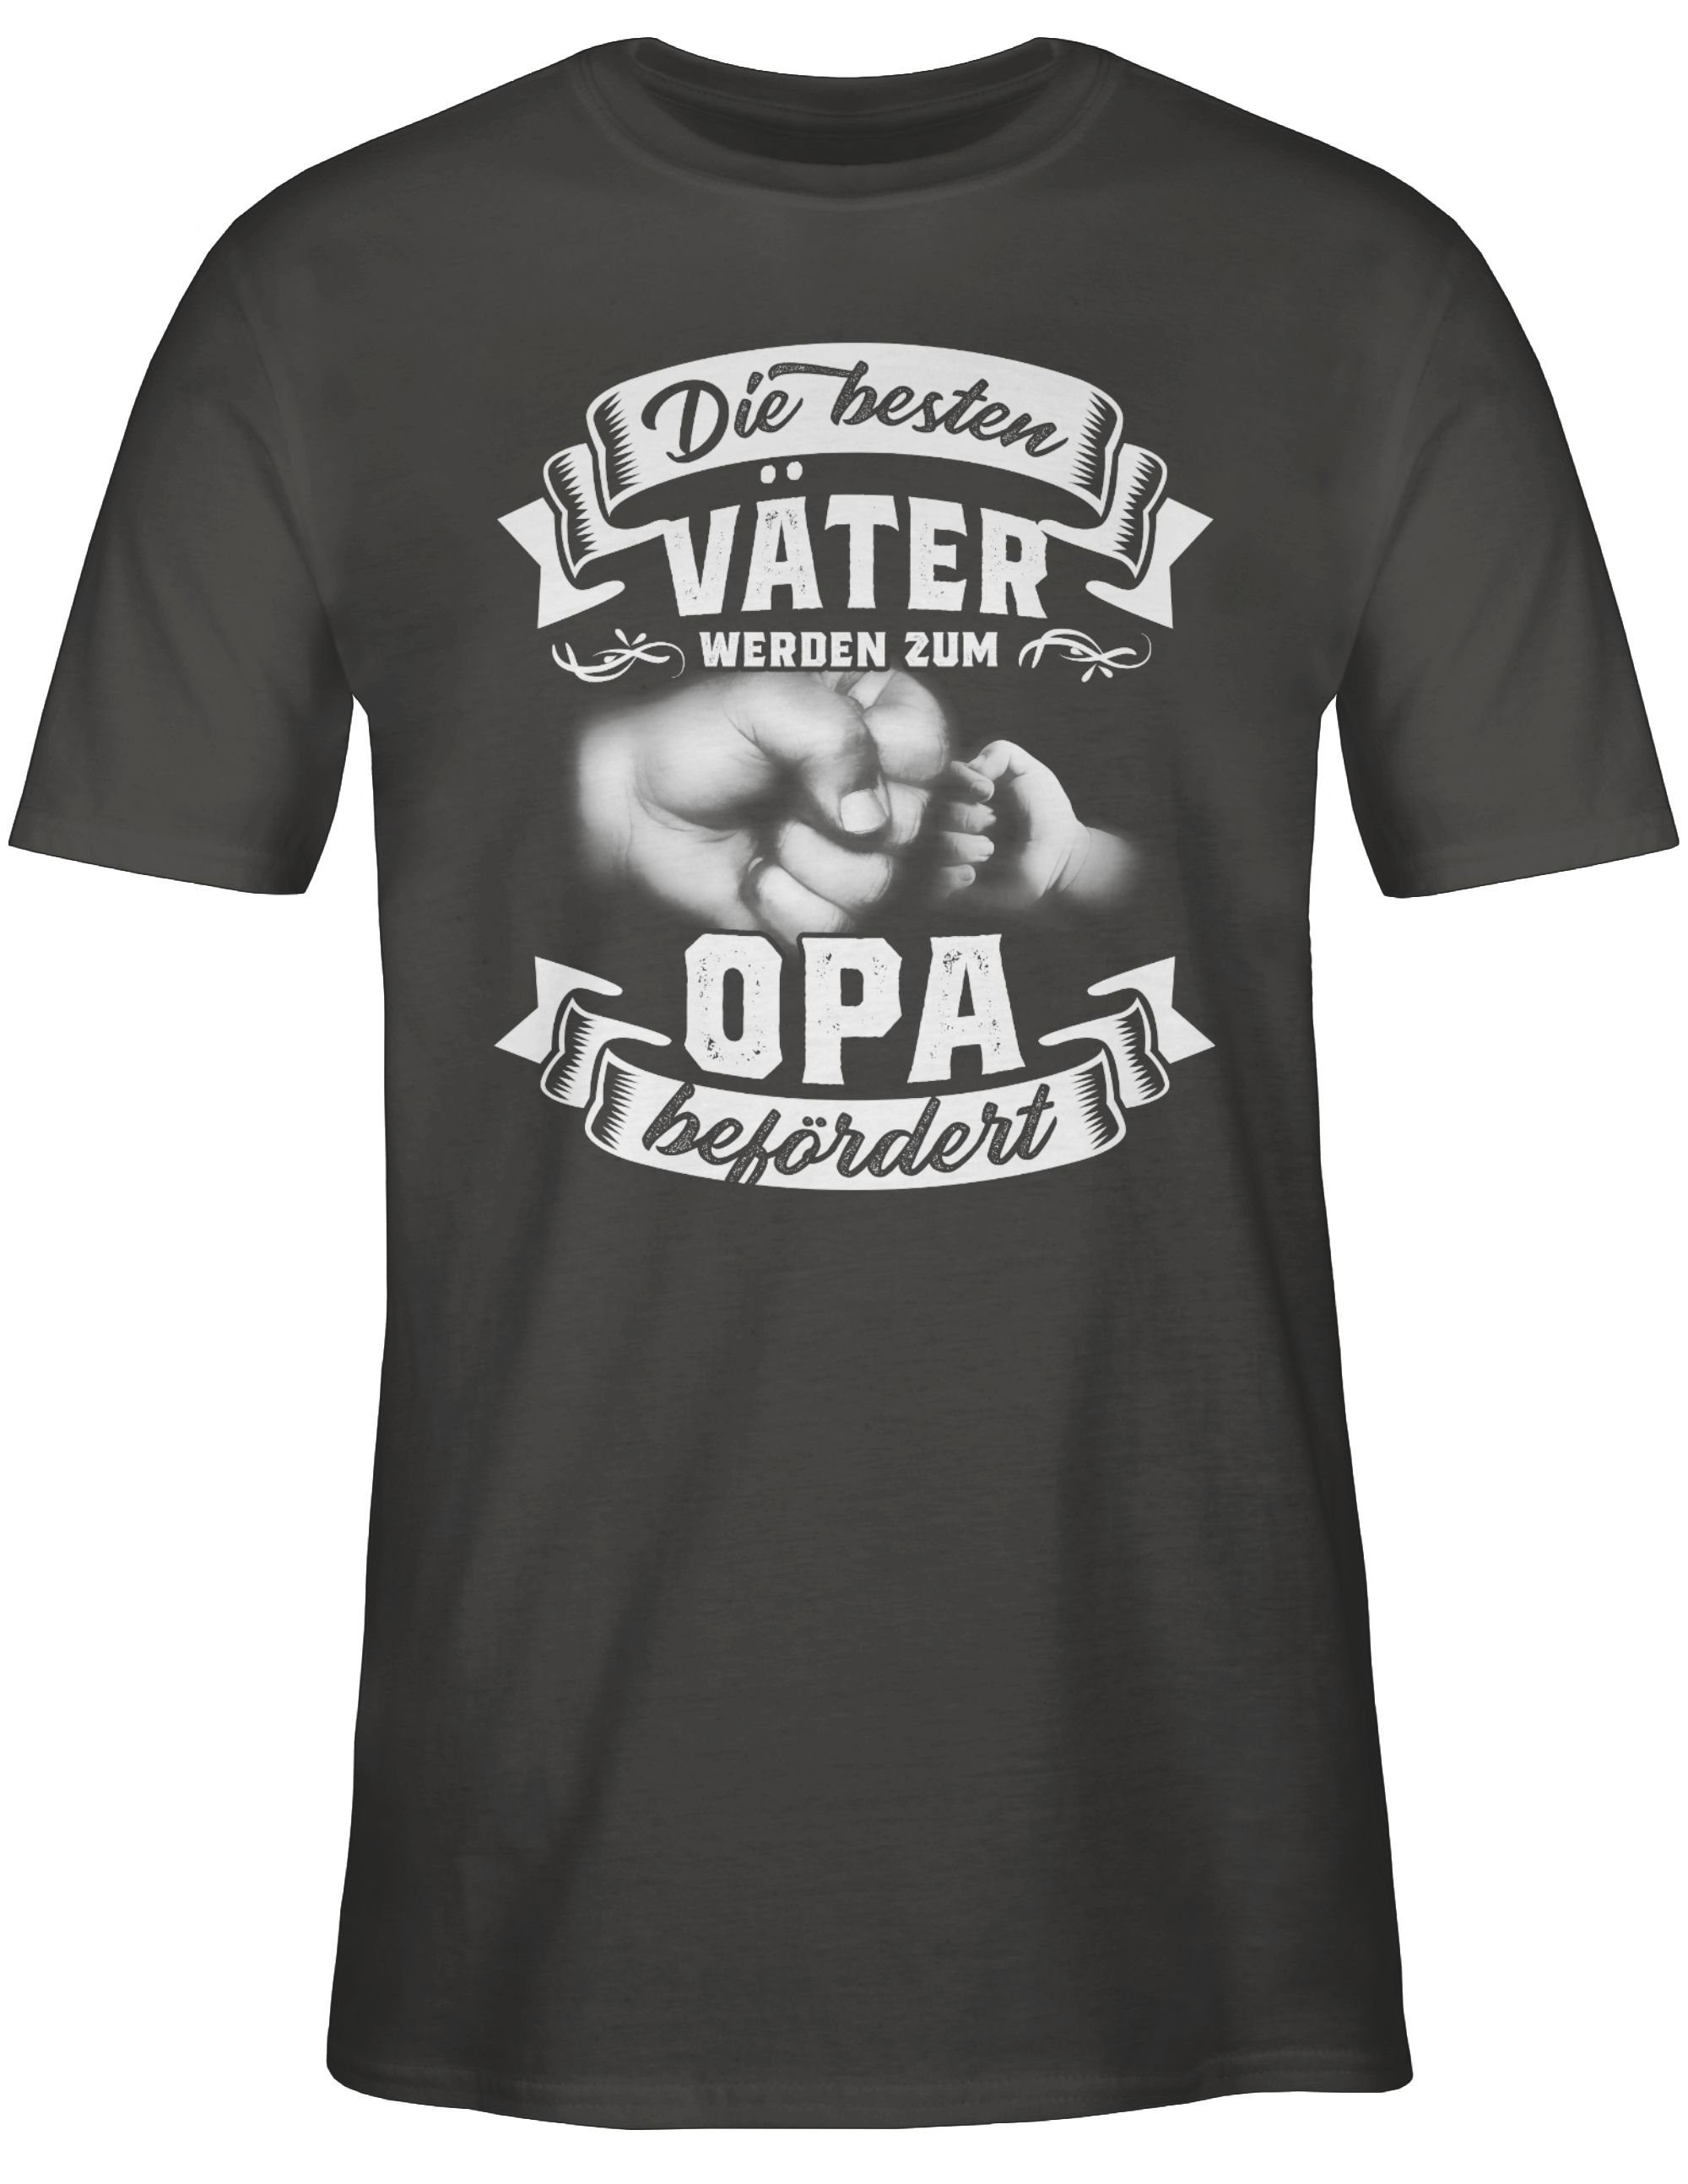 Shirtracer Geschenke T-Shirt befördert Opa Opa Dunkelgrau 03 Werdender